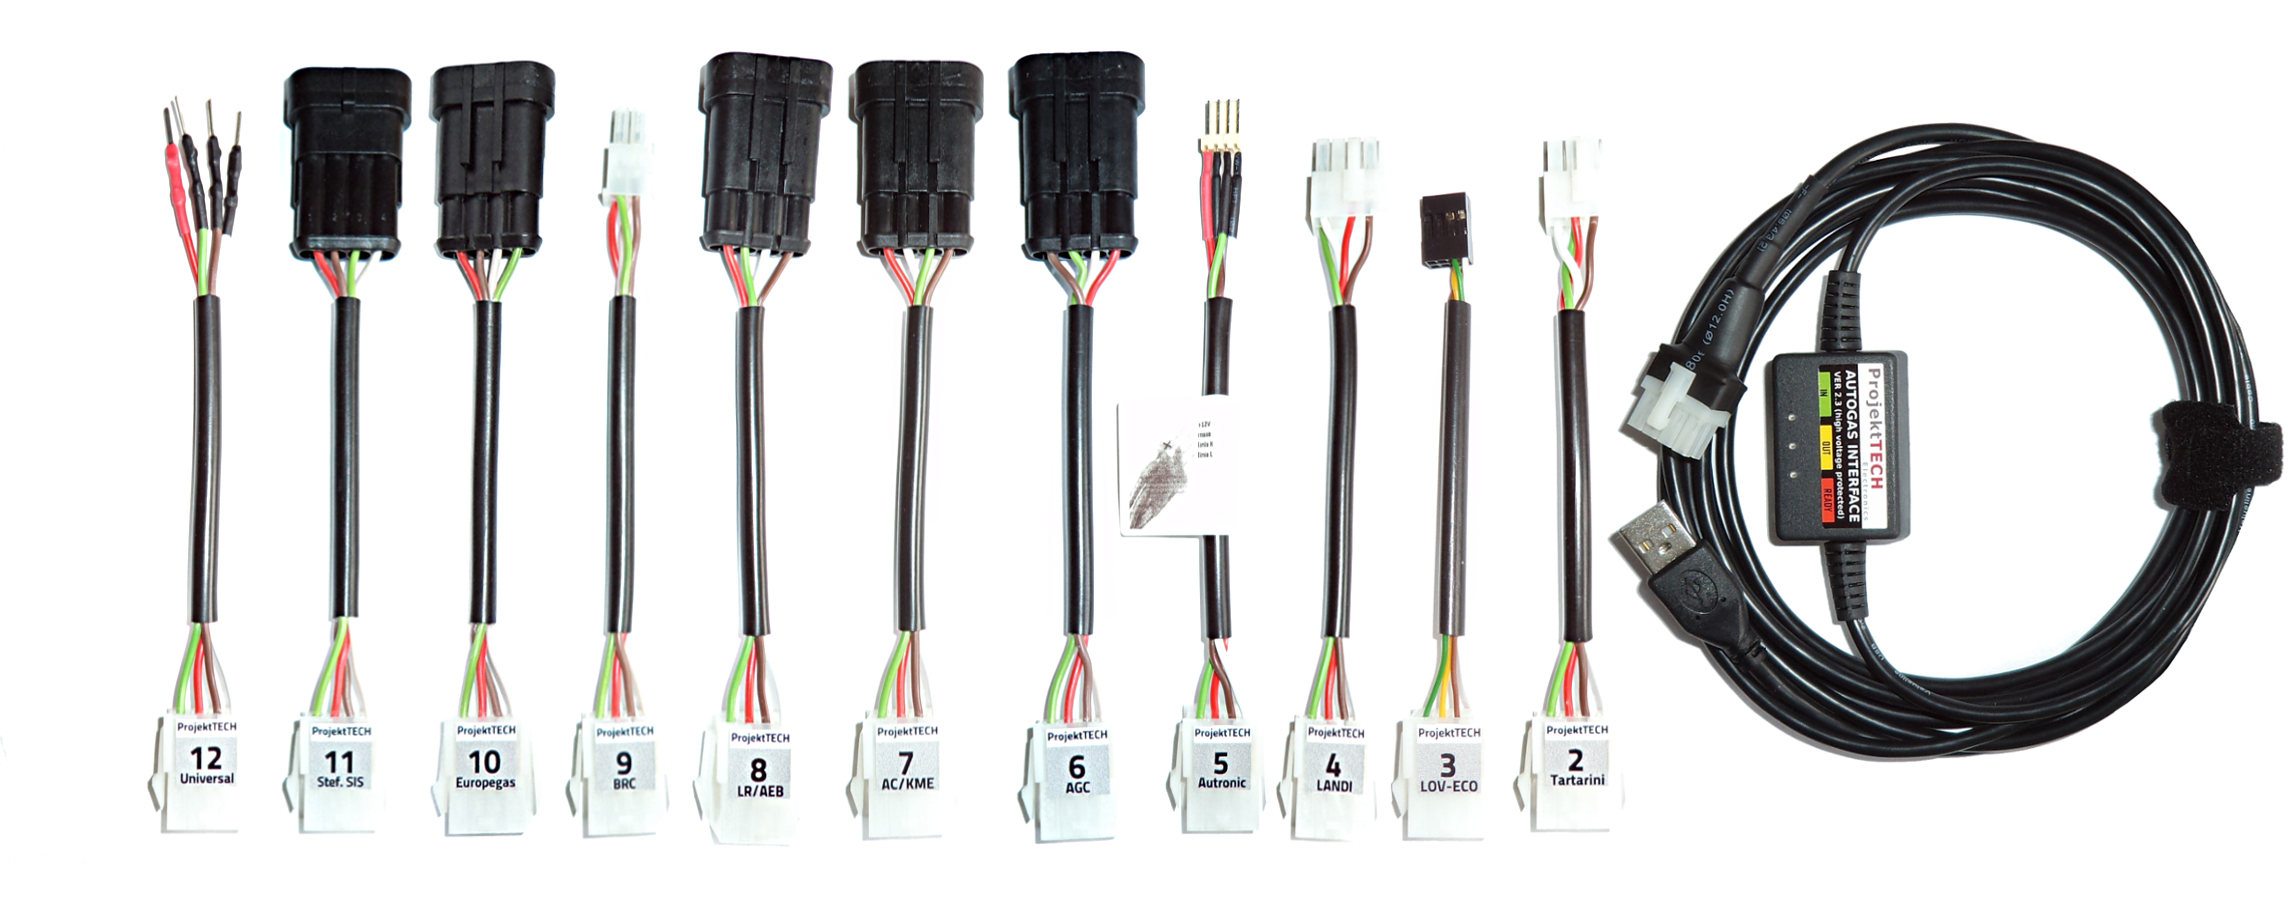 Set of 12 cables kme, stag, autronic, compact, landi renzo, brc, tartarini, lendi, lov-eco, europegas, stefanelli, universal